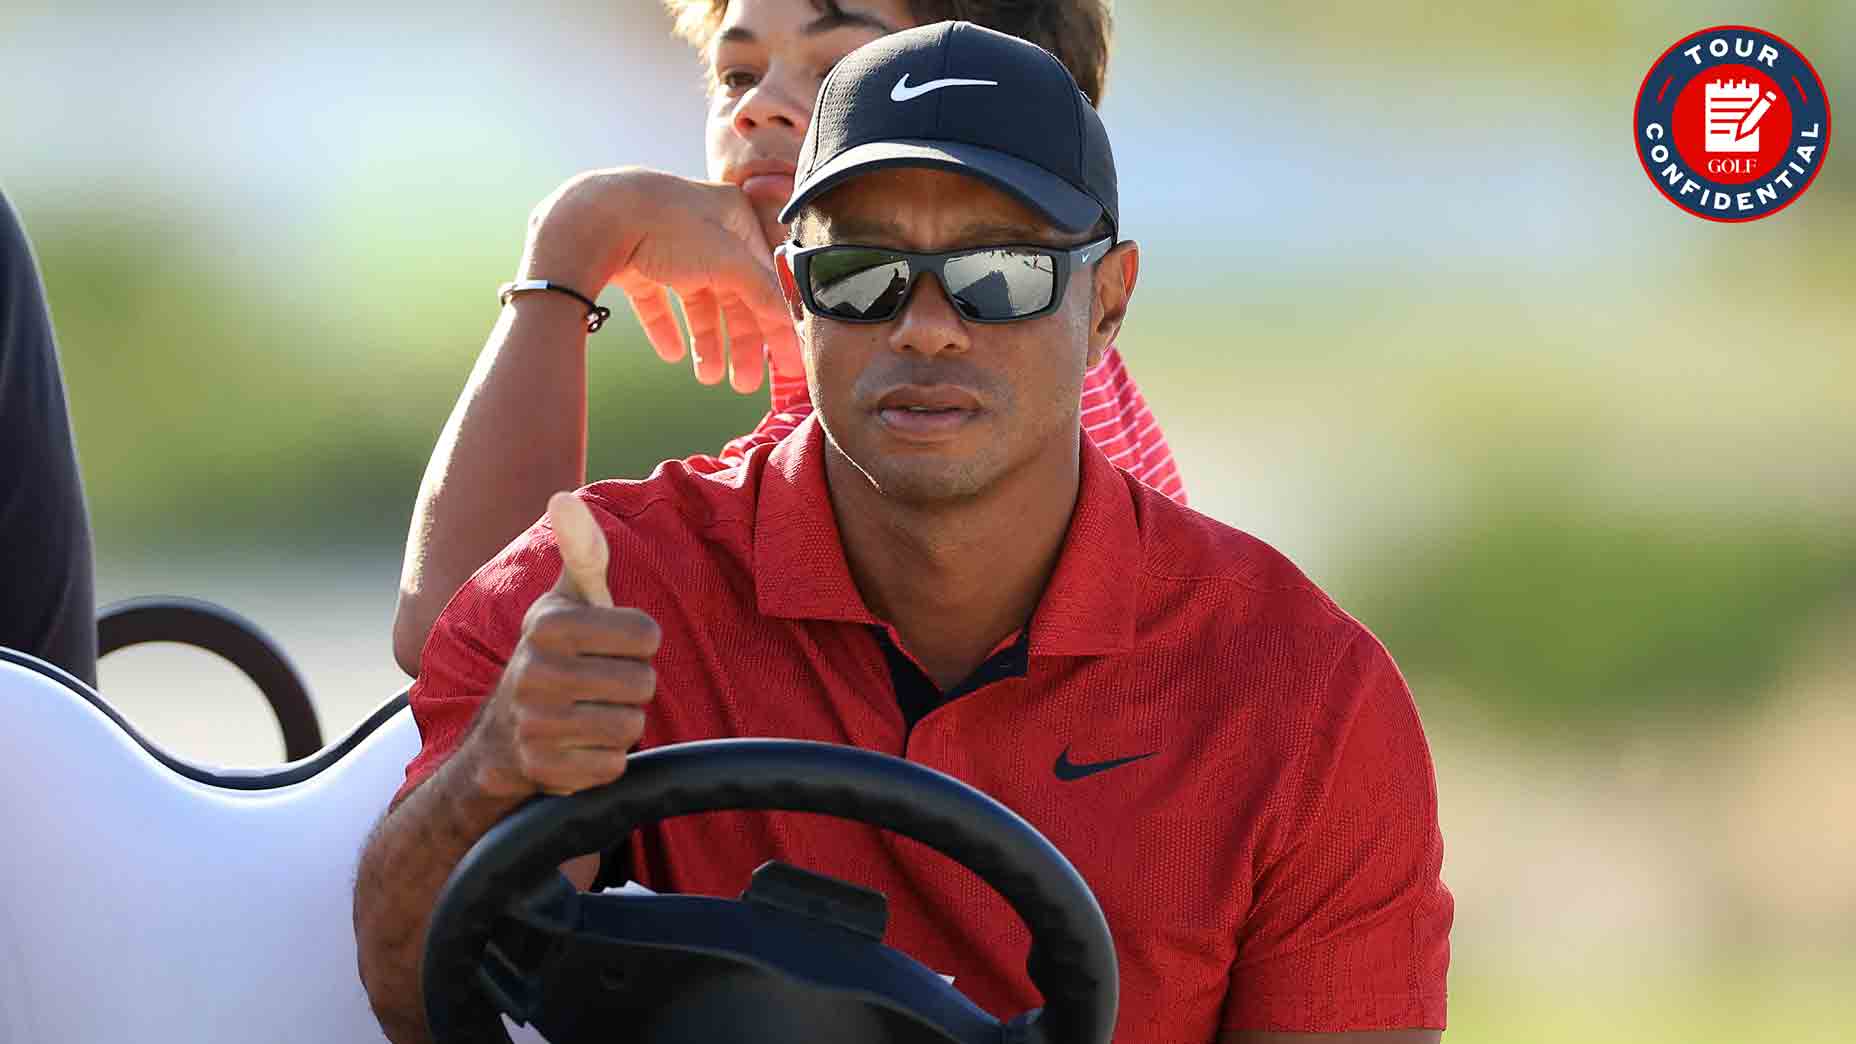 Tour Confidential: Tiger Woods’ return, Paul Azinger’s NBC exit